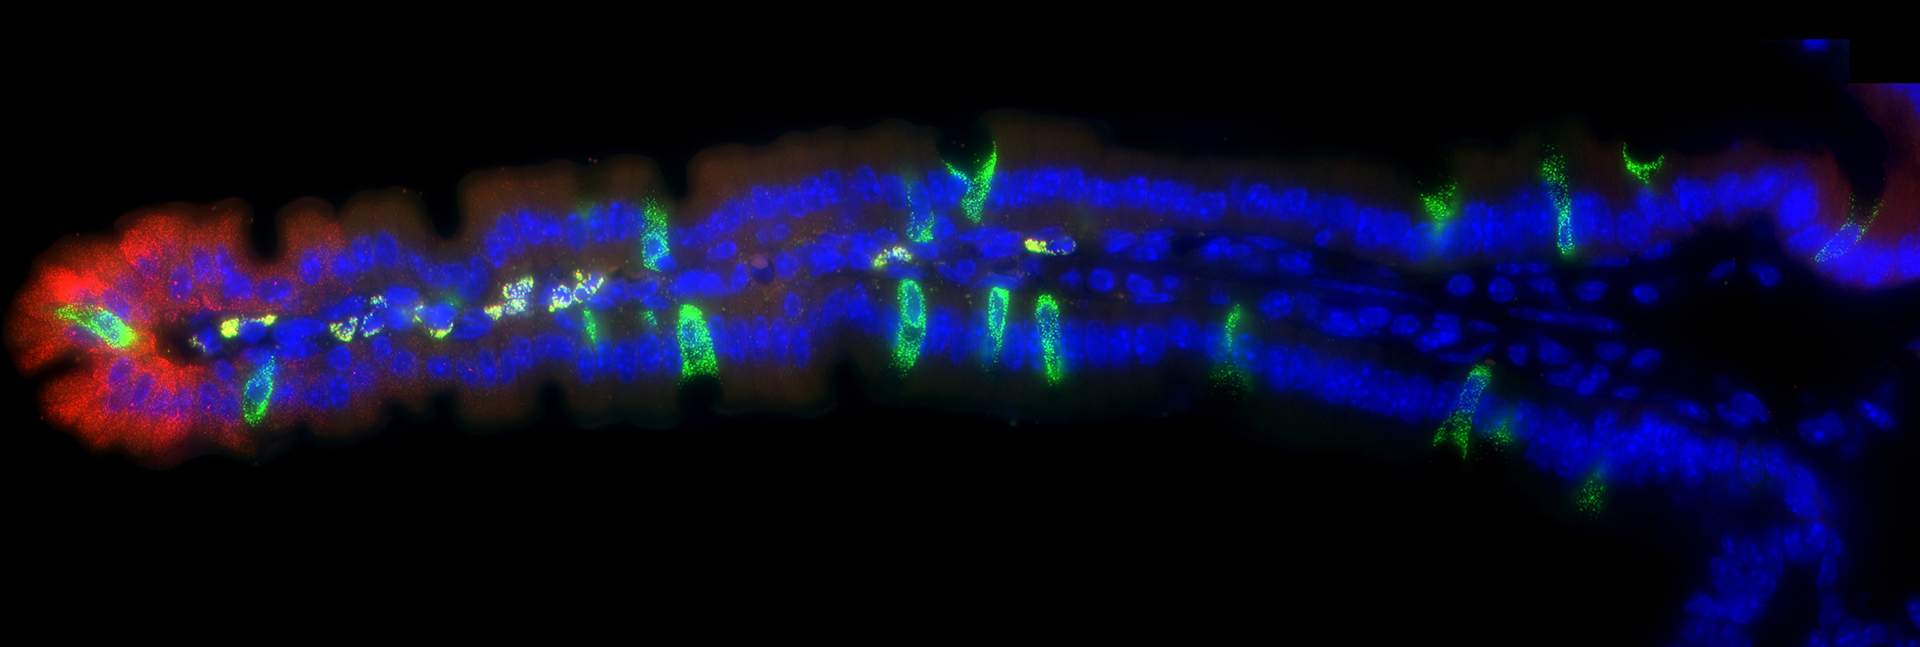 ילום מיקרוסקופי פלואורסצנטי של התבטאות גנים (באדום ובירוק) באזורים מסוימים לאורך סיס המעי (בכחול - גרעיני התאים)